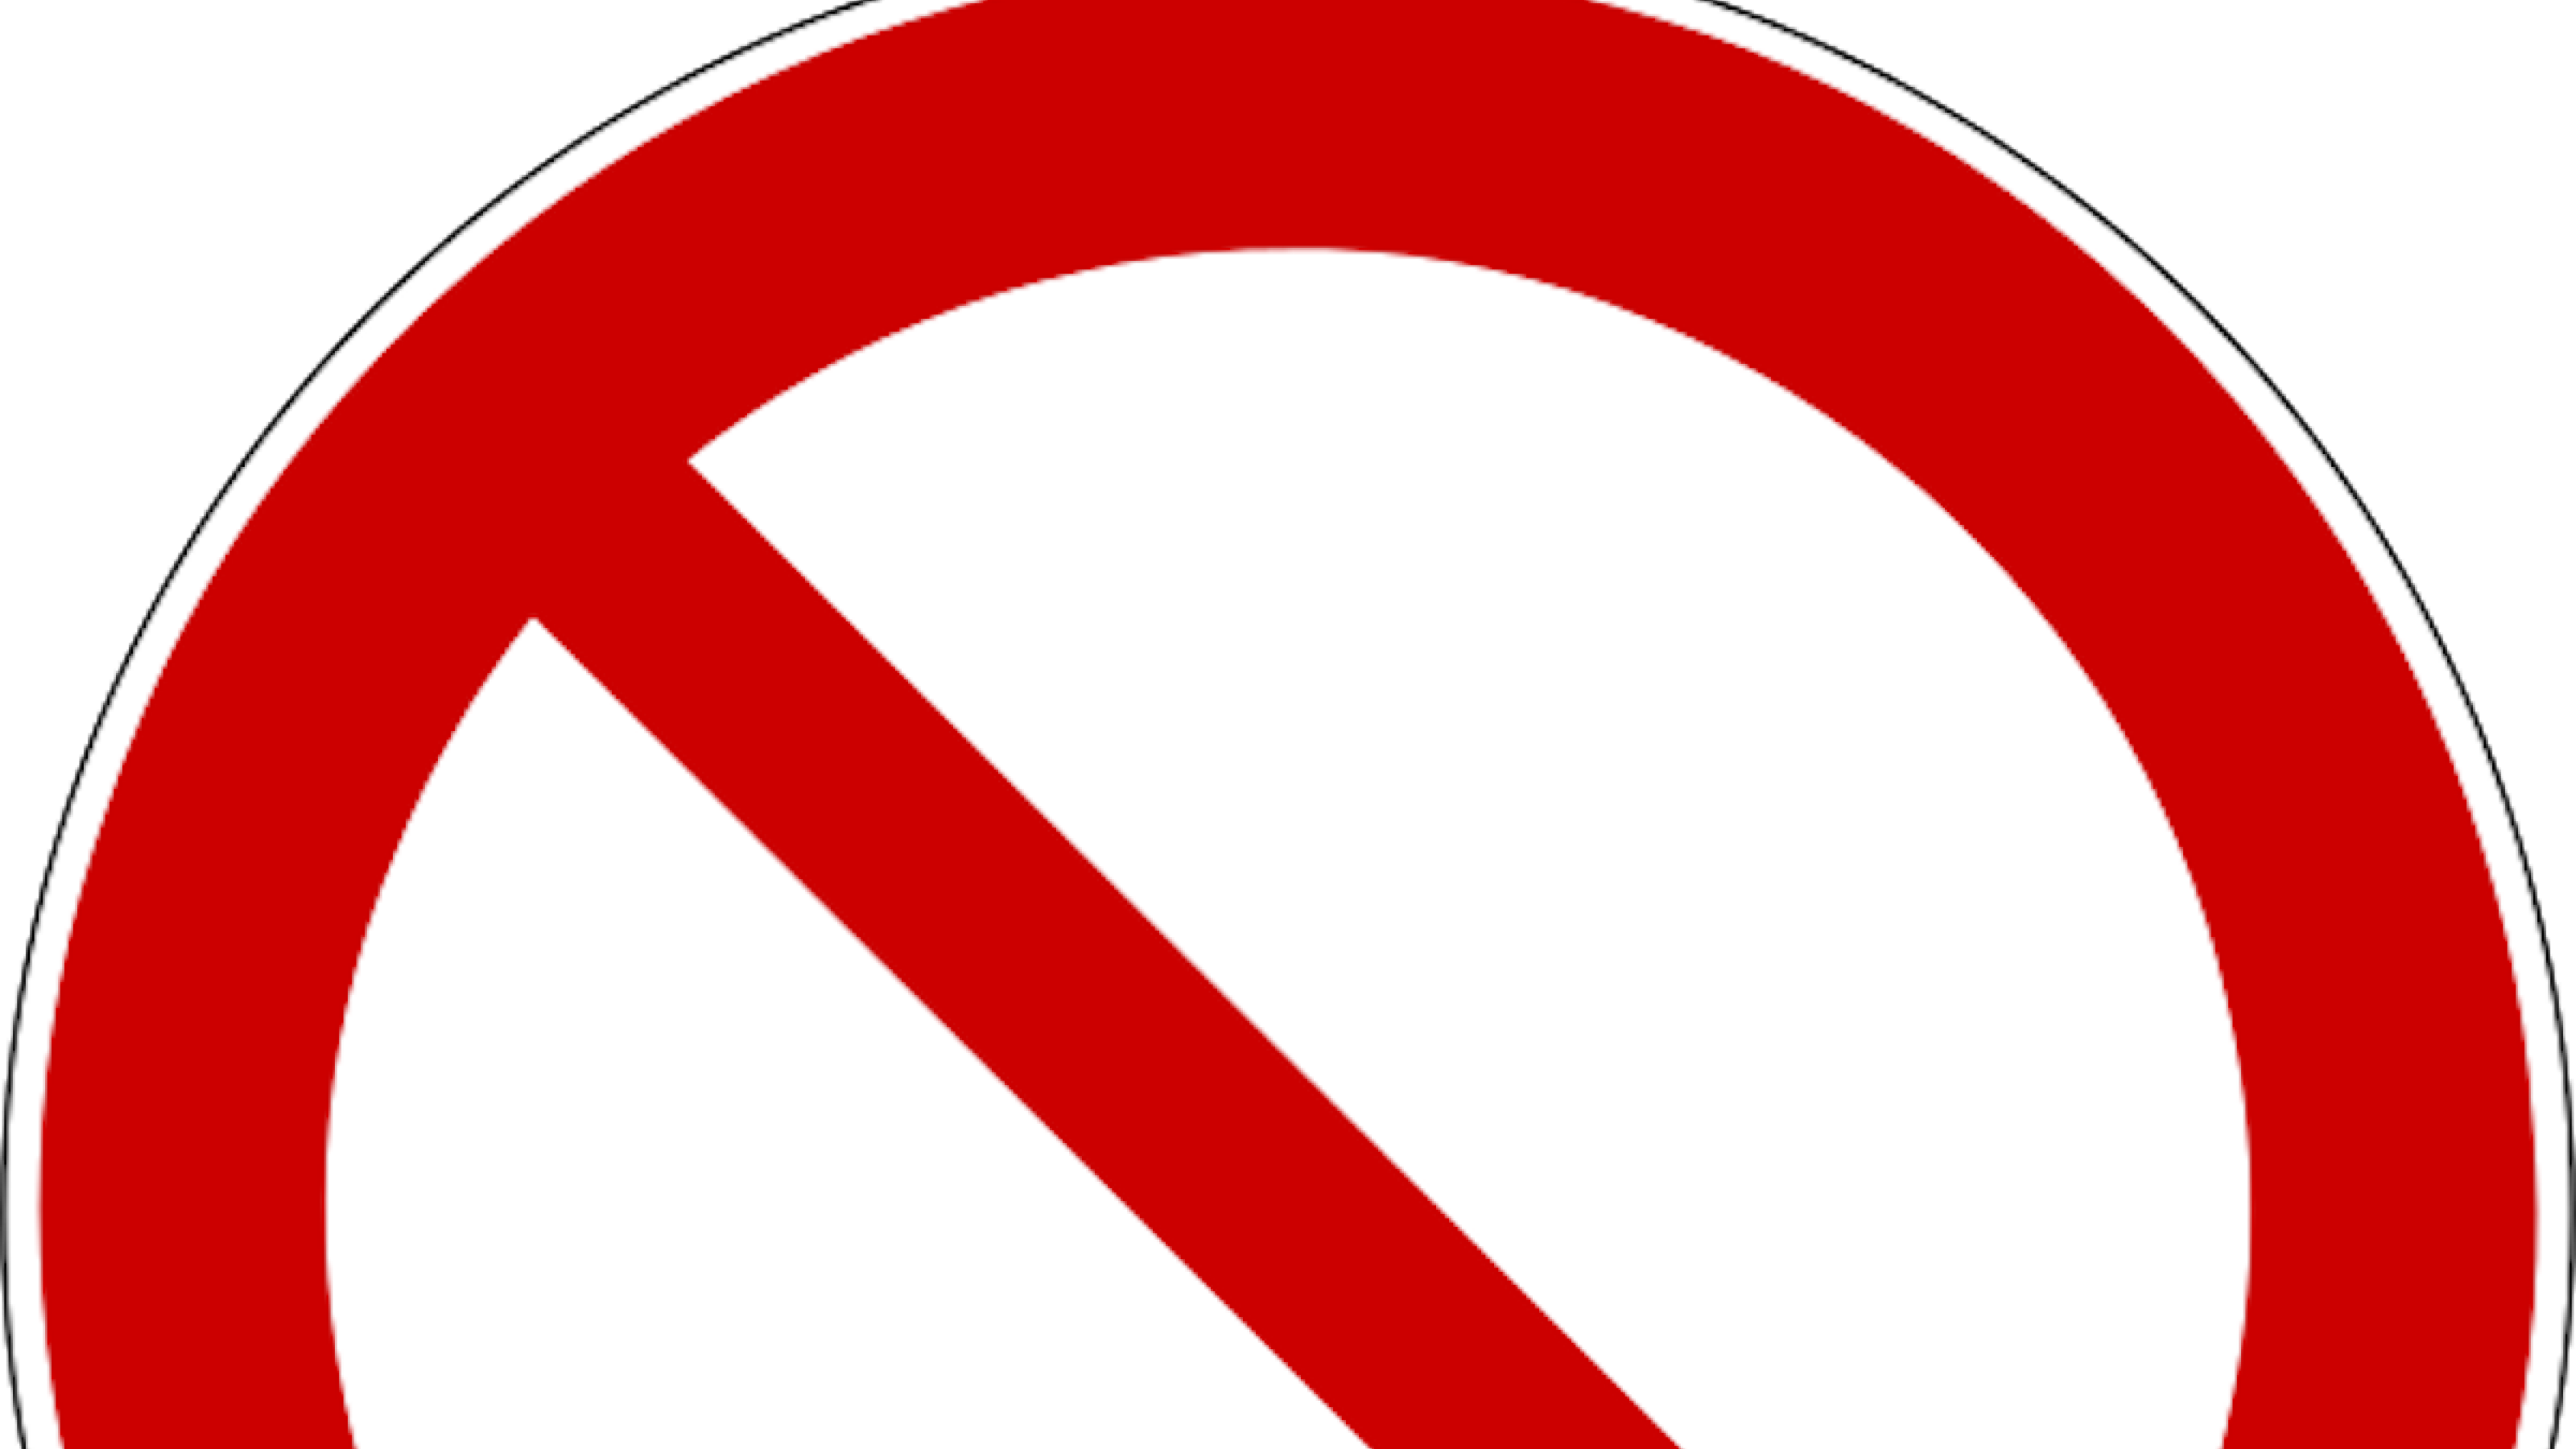 Roter Kreis auf weißem Grund, mit einem schrägen Strich von links oben nach rechts unten durchkreuzt – Verkehrschild für „Einfahrt verboten“ nach DIN EN ISO 7010